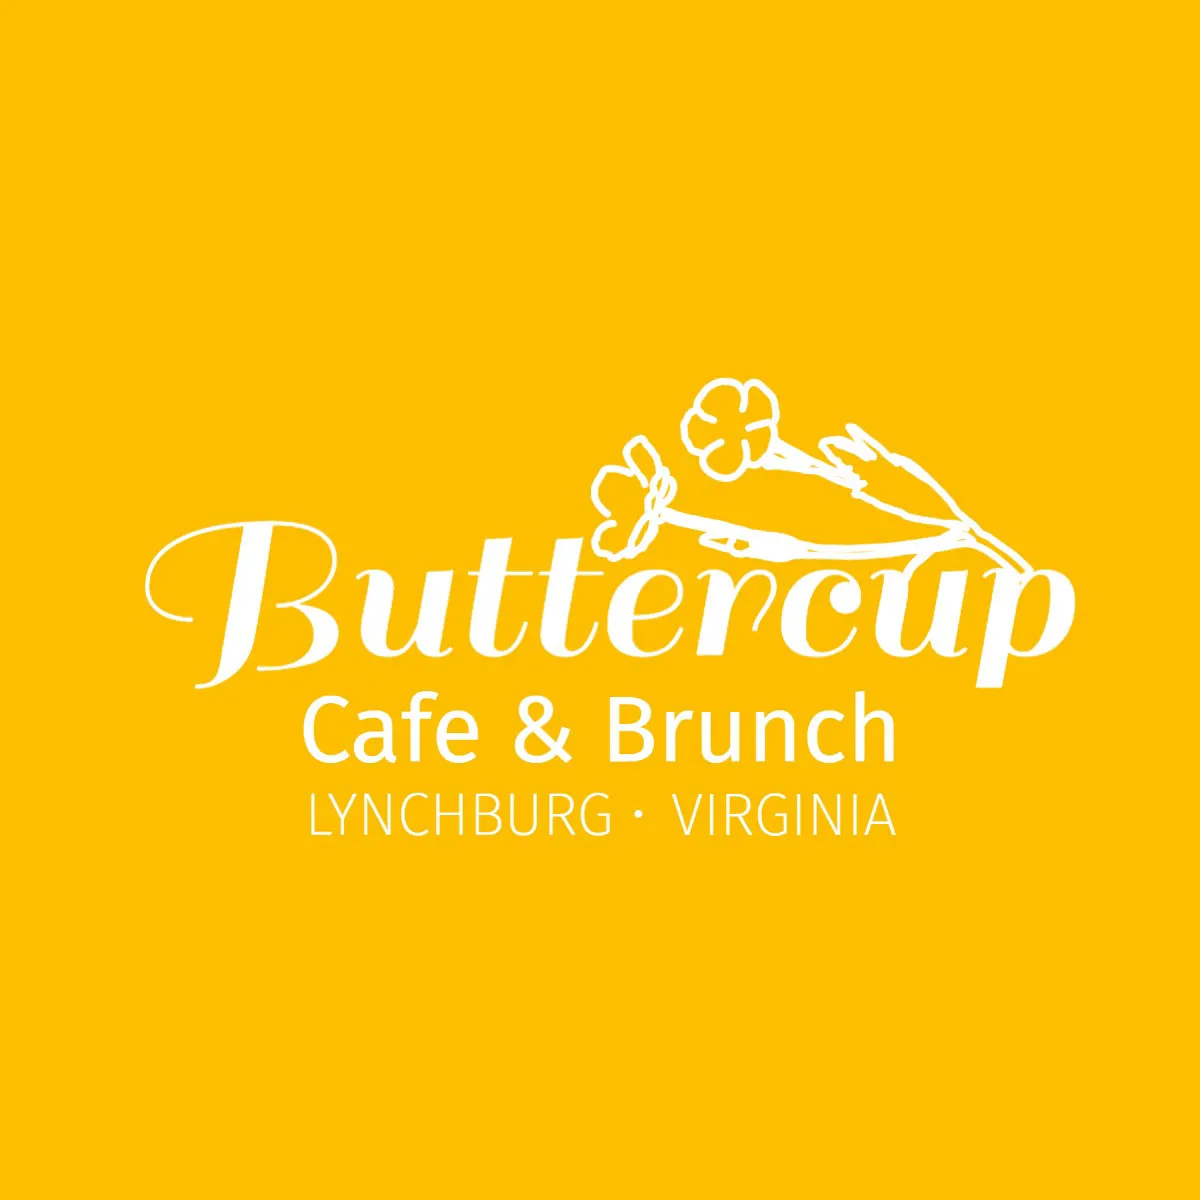 Yellow Buttercup Cafe & Brunch Restaurant Logo